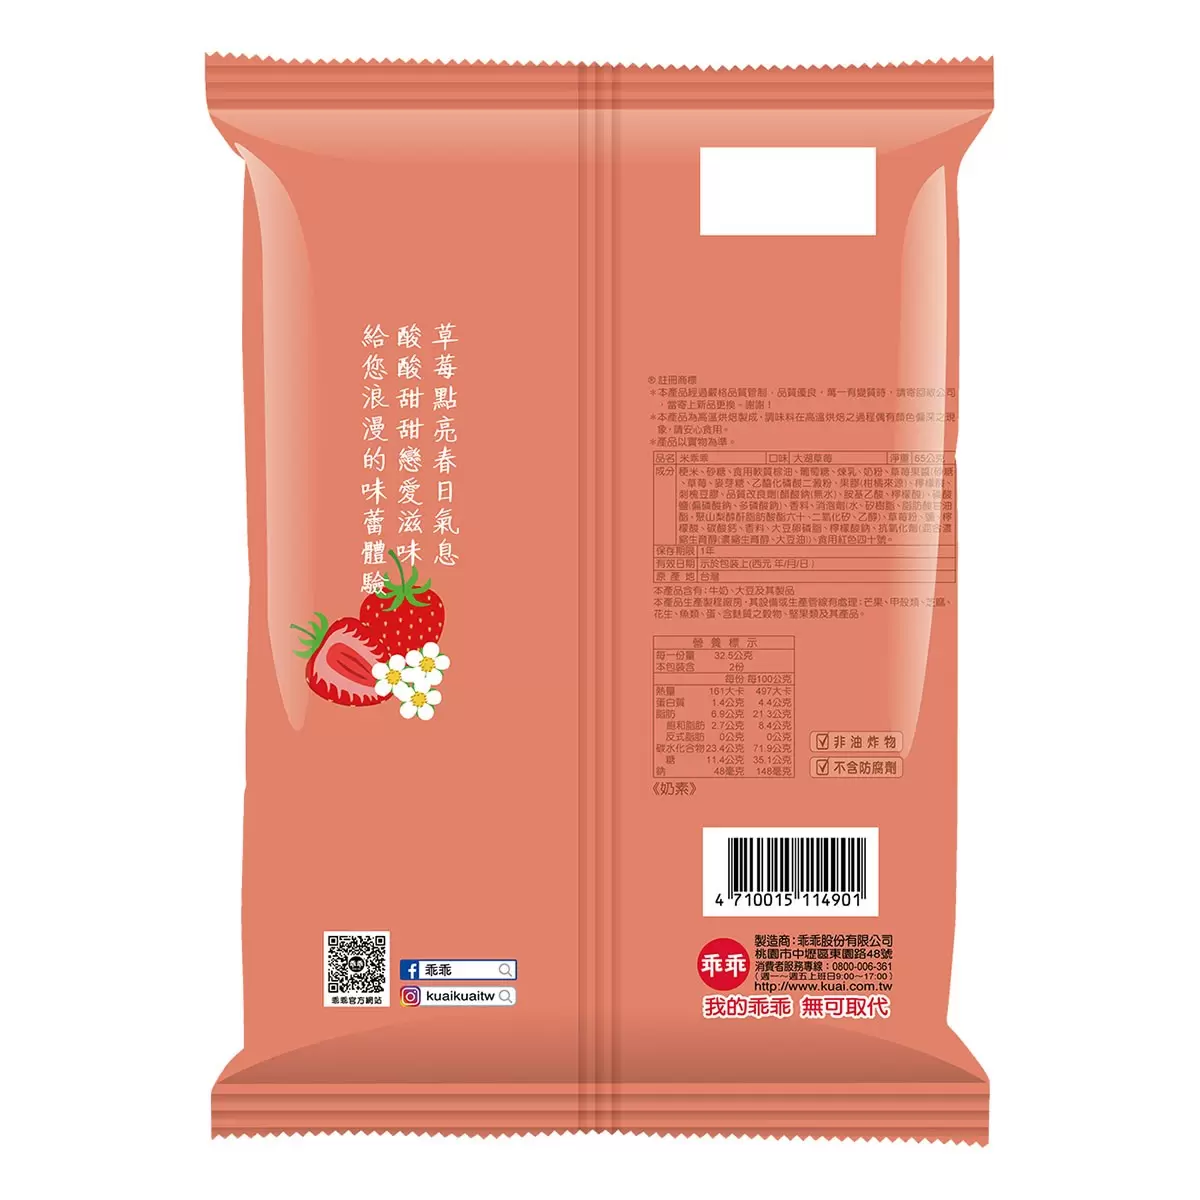 乖乖 米乖乖綜合箱 芒果+草莓風味 65公克 X 8入